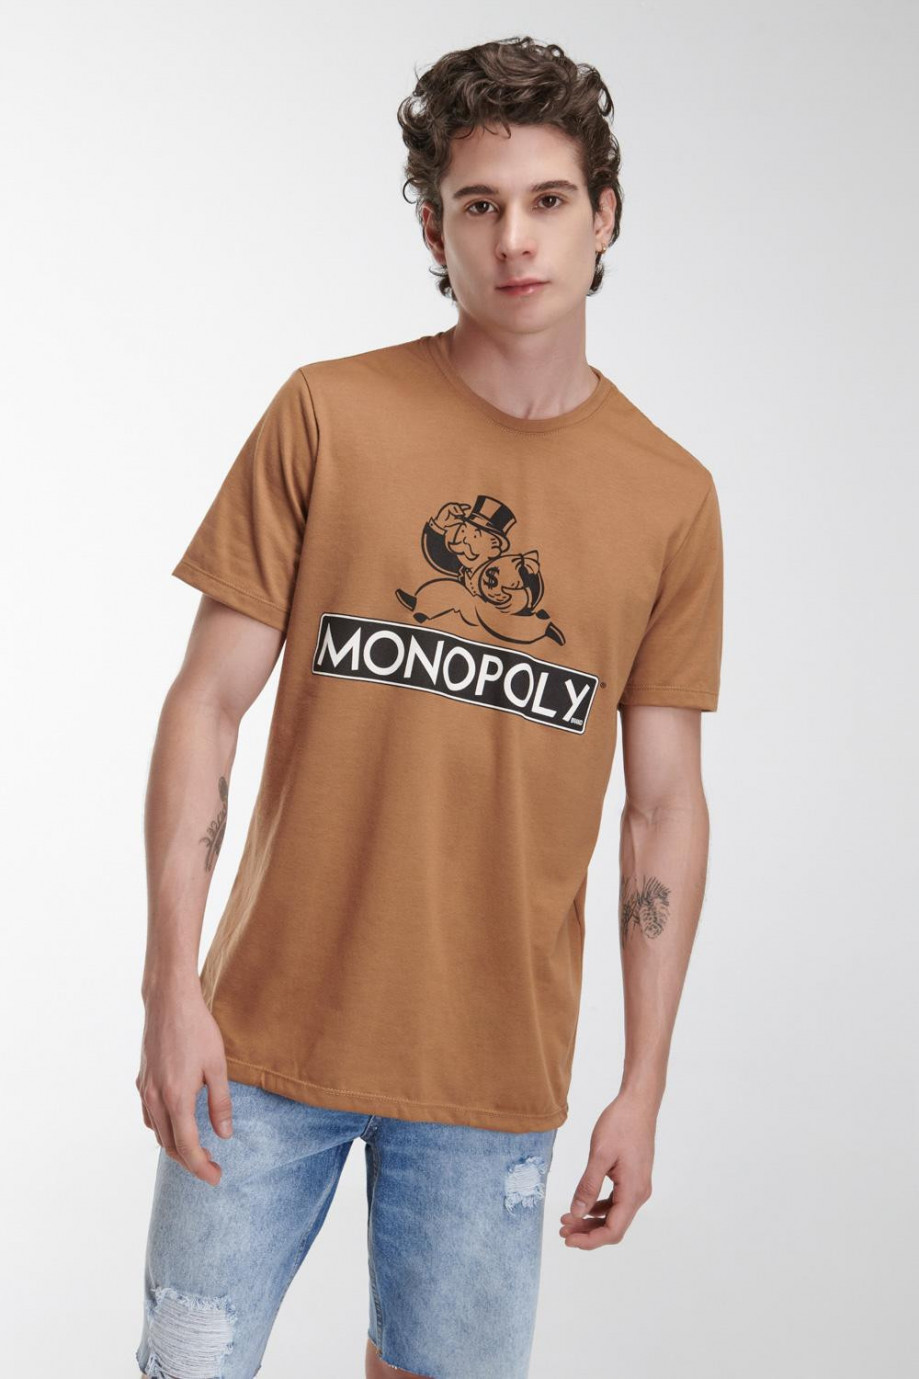 Camiseta manga corta, estampado de Monopolio.